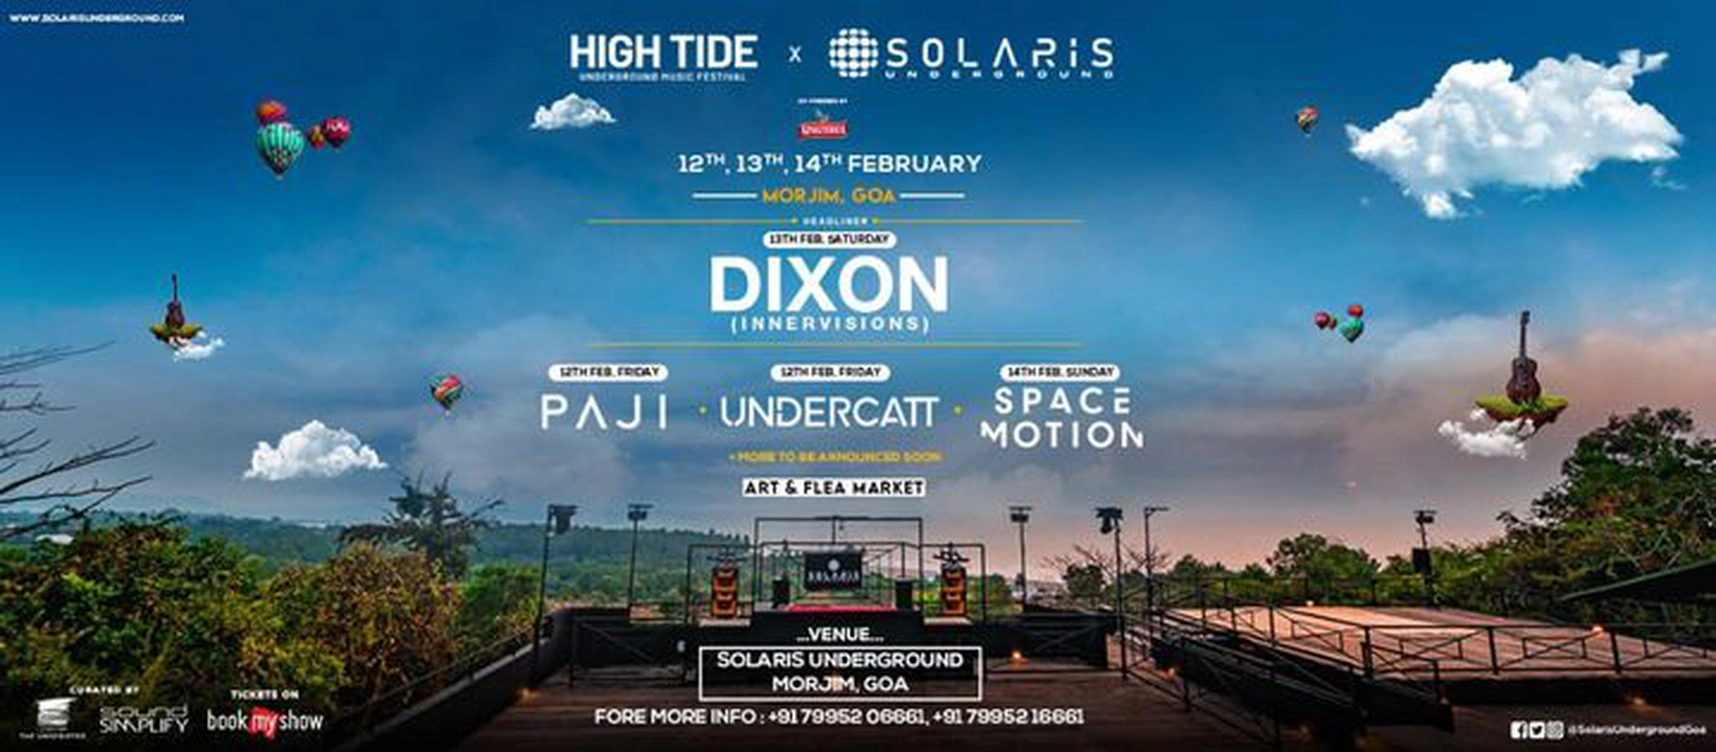 HIGHTIDE Music Festival × Solaris Underground